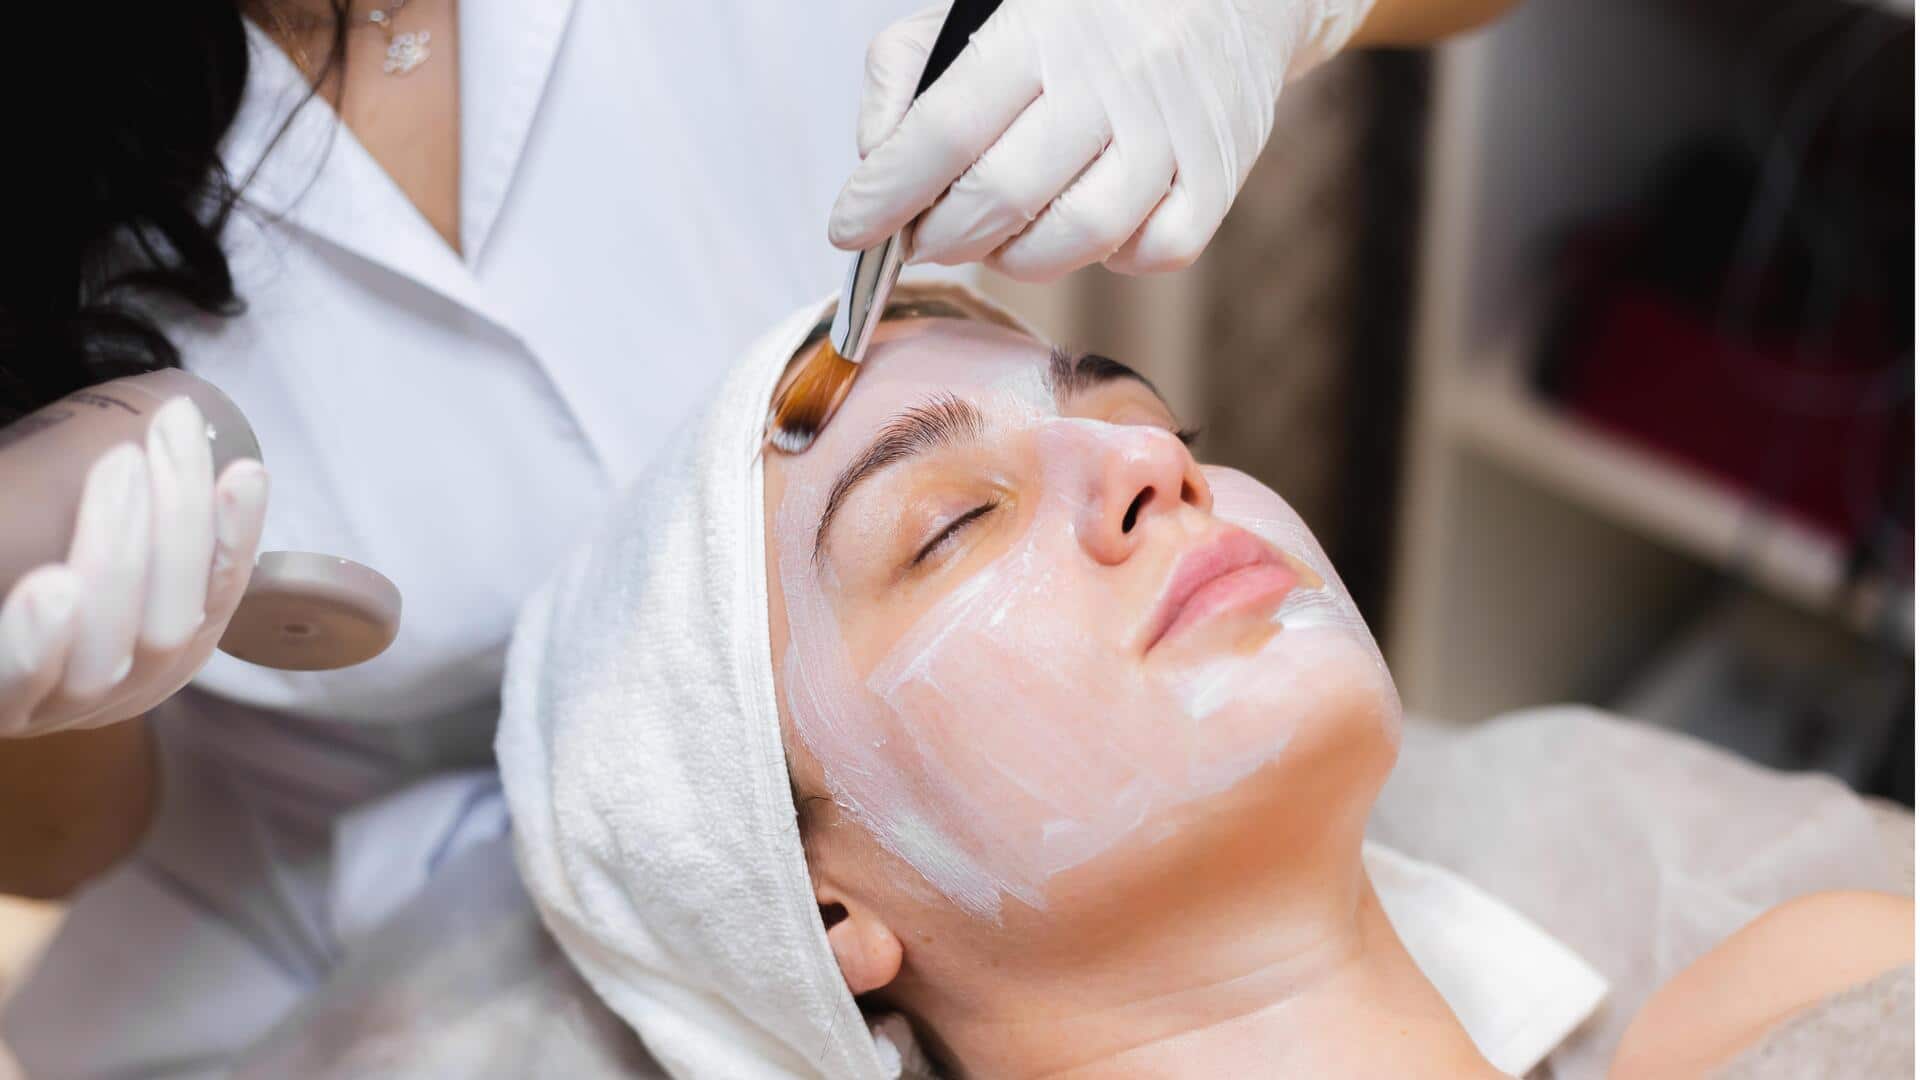 त्वचा की देखभाल करते हैं ये 5 तरह के फेशियल, जानिए इनसे मिलने वाले फायदे